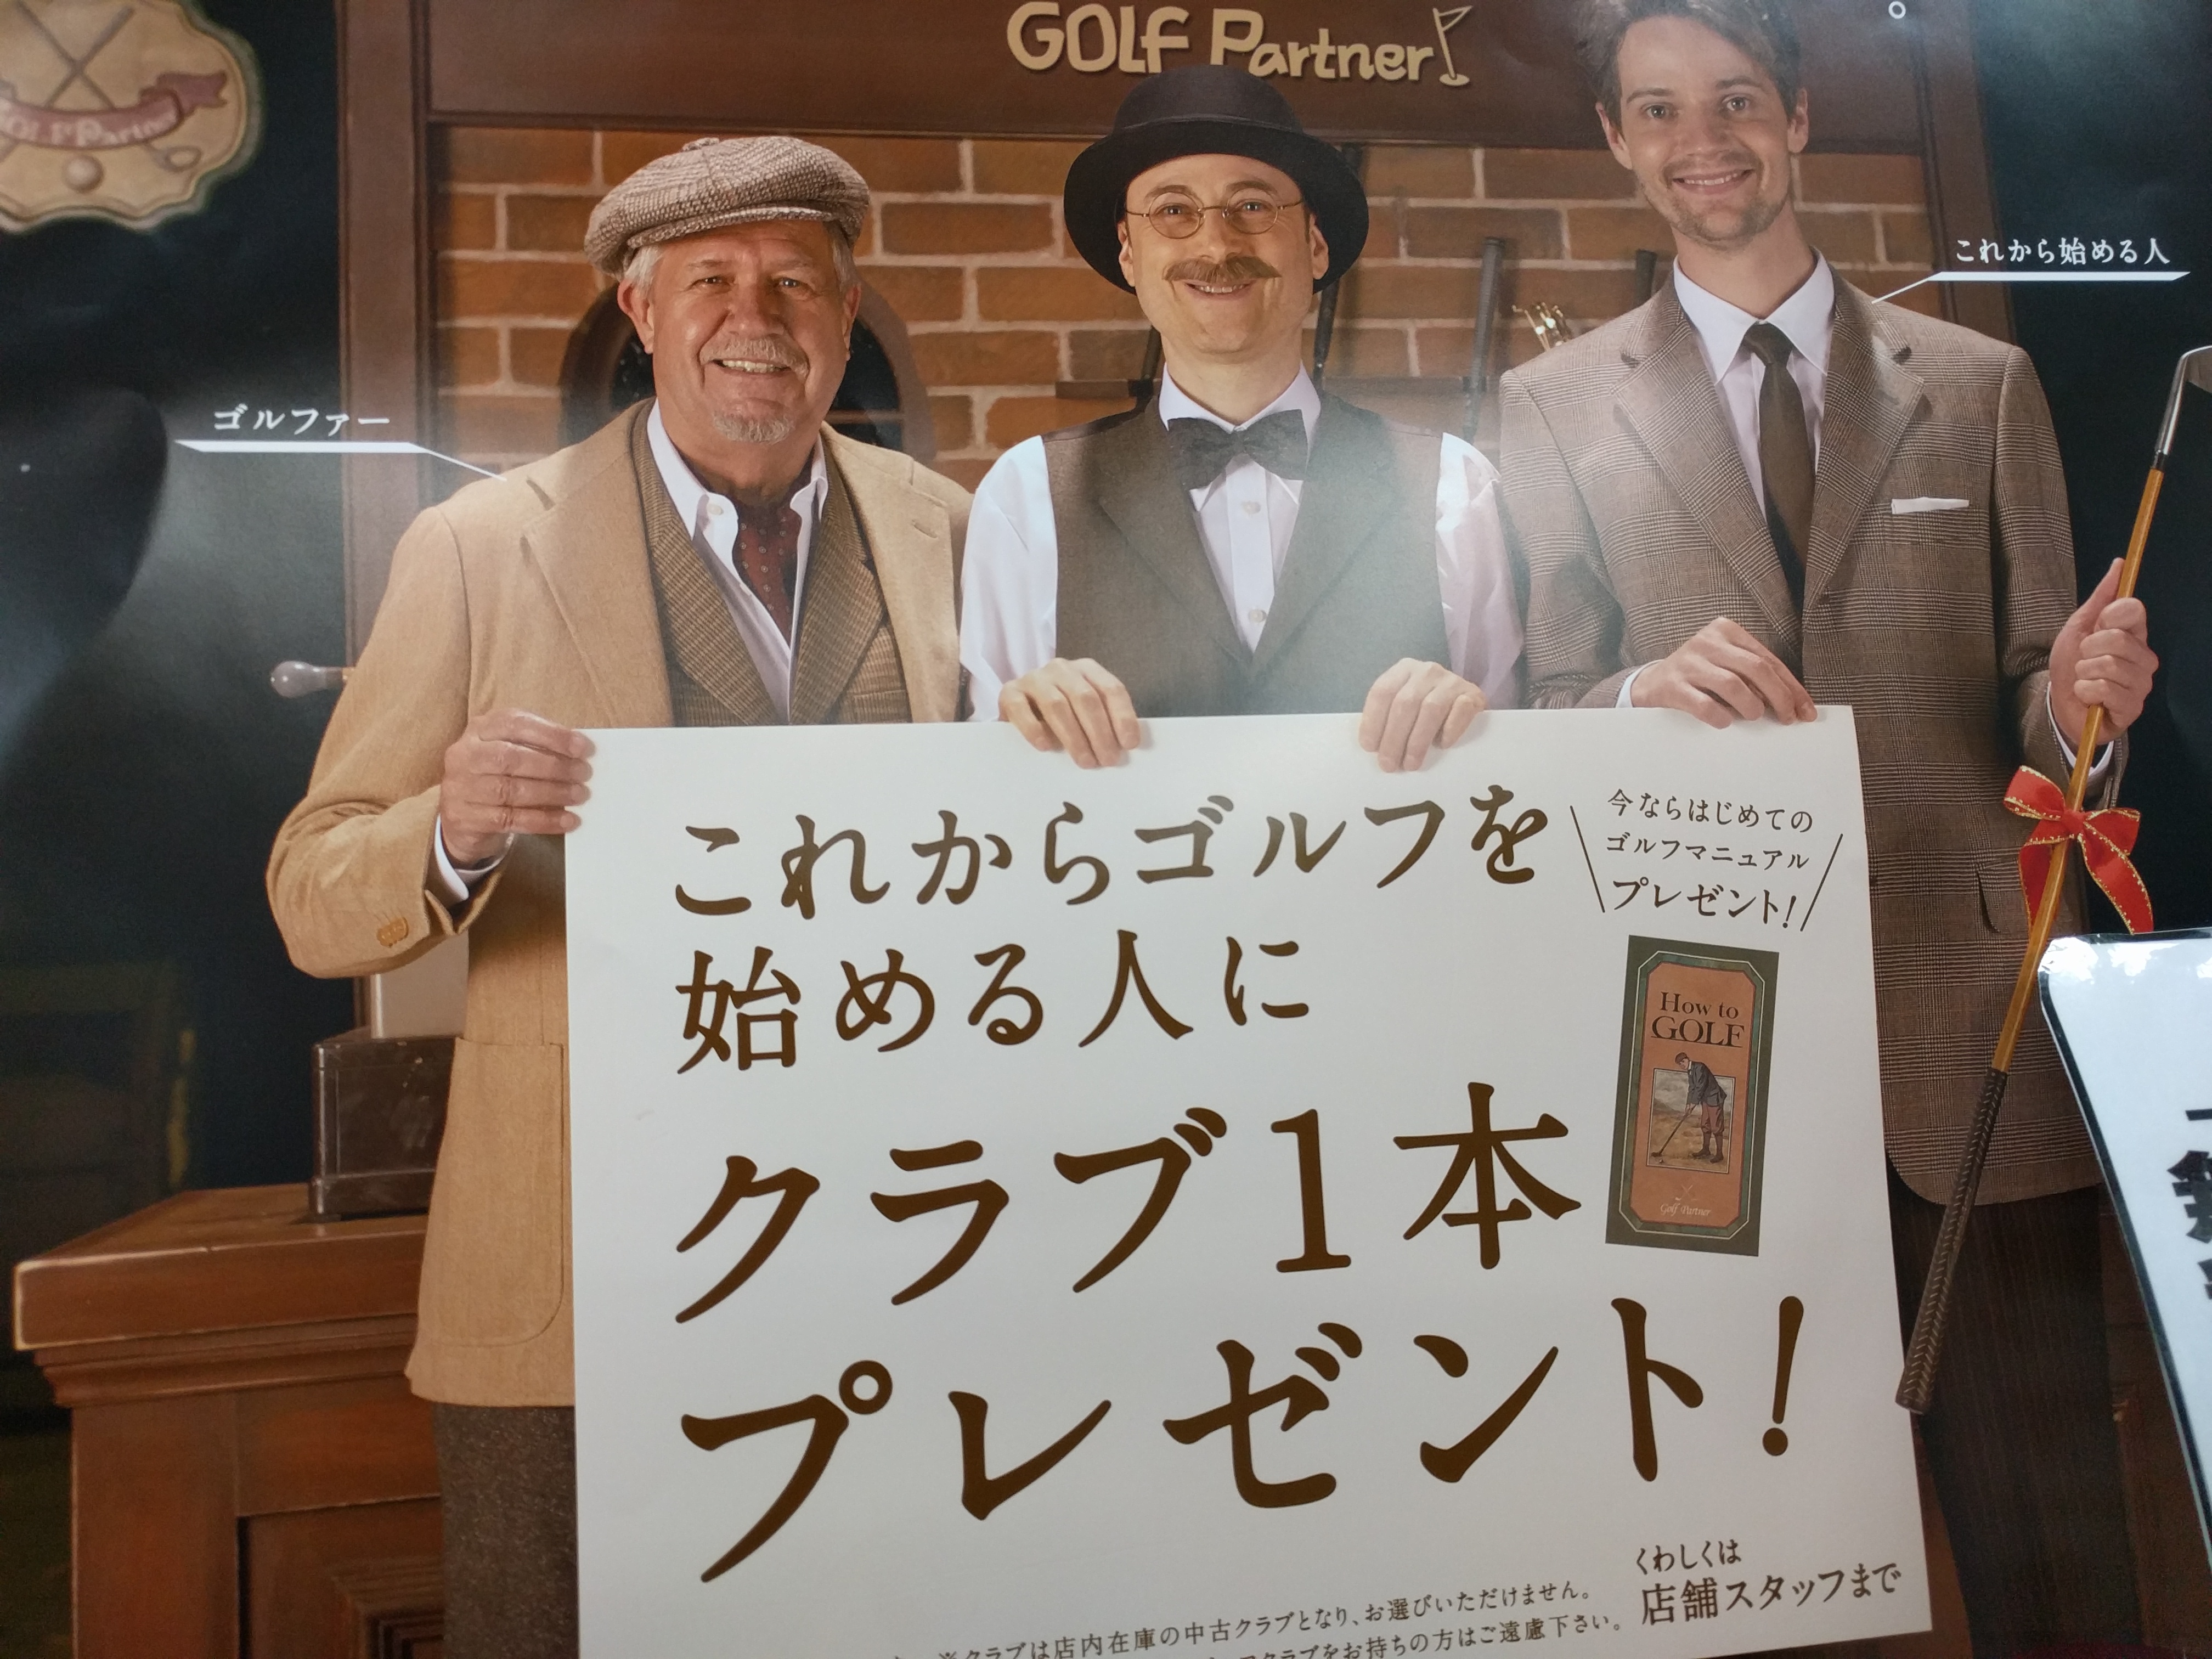 http://www.golfpartner.co.jp/536/IMG_20160206_183912.jpg